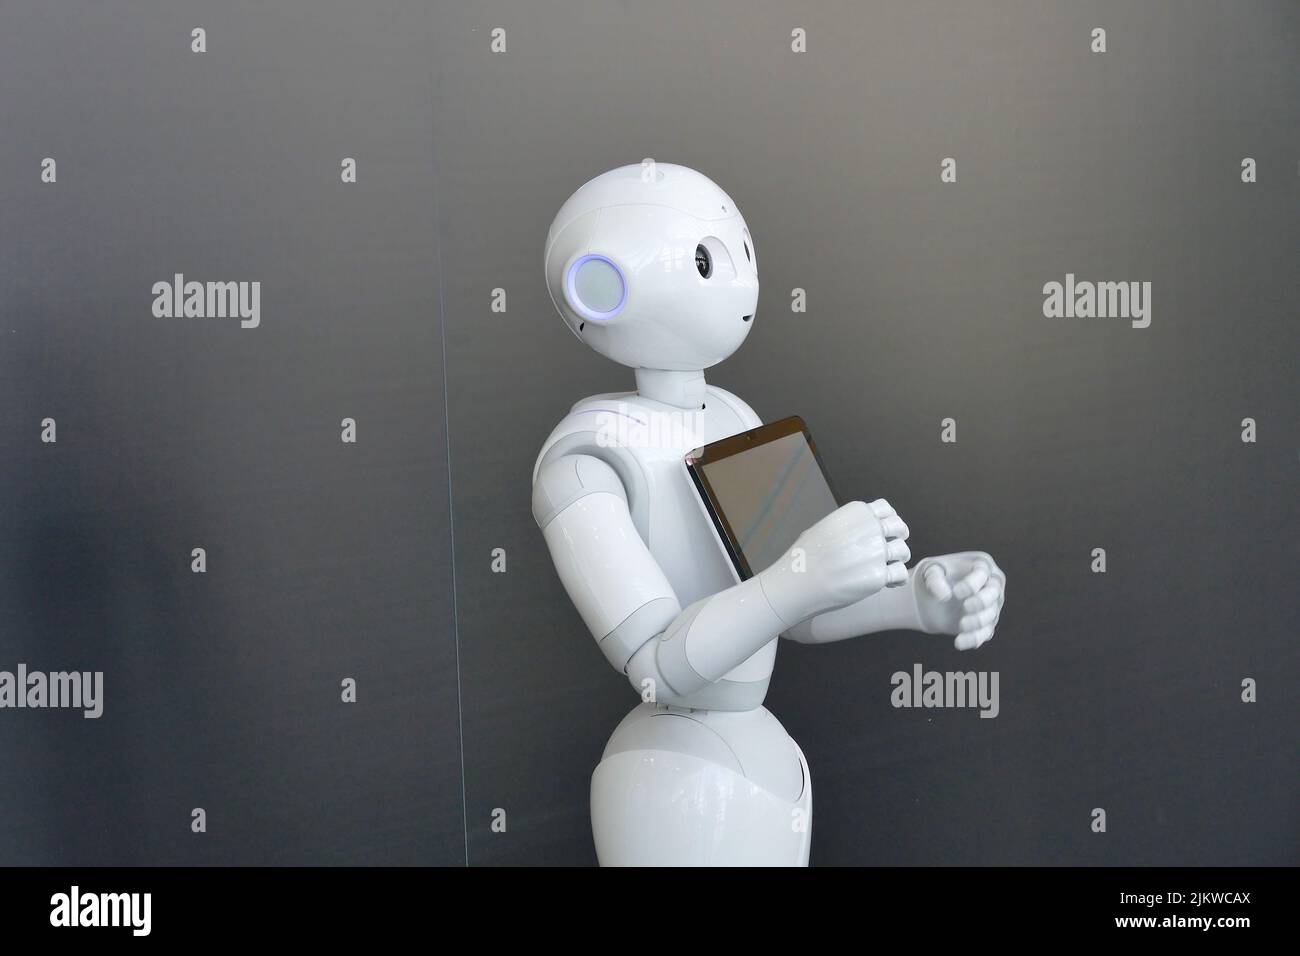 Robot humanoide social Pepper optimizado para la interacción humana a través de la conversación y su pantalla táctil Foto de stock